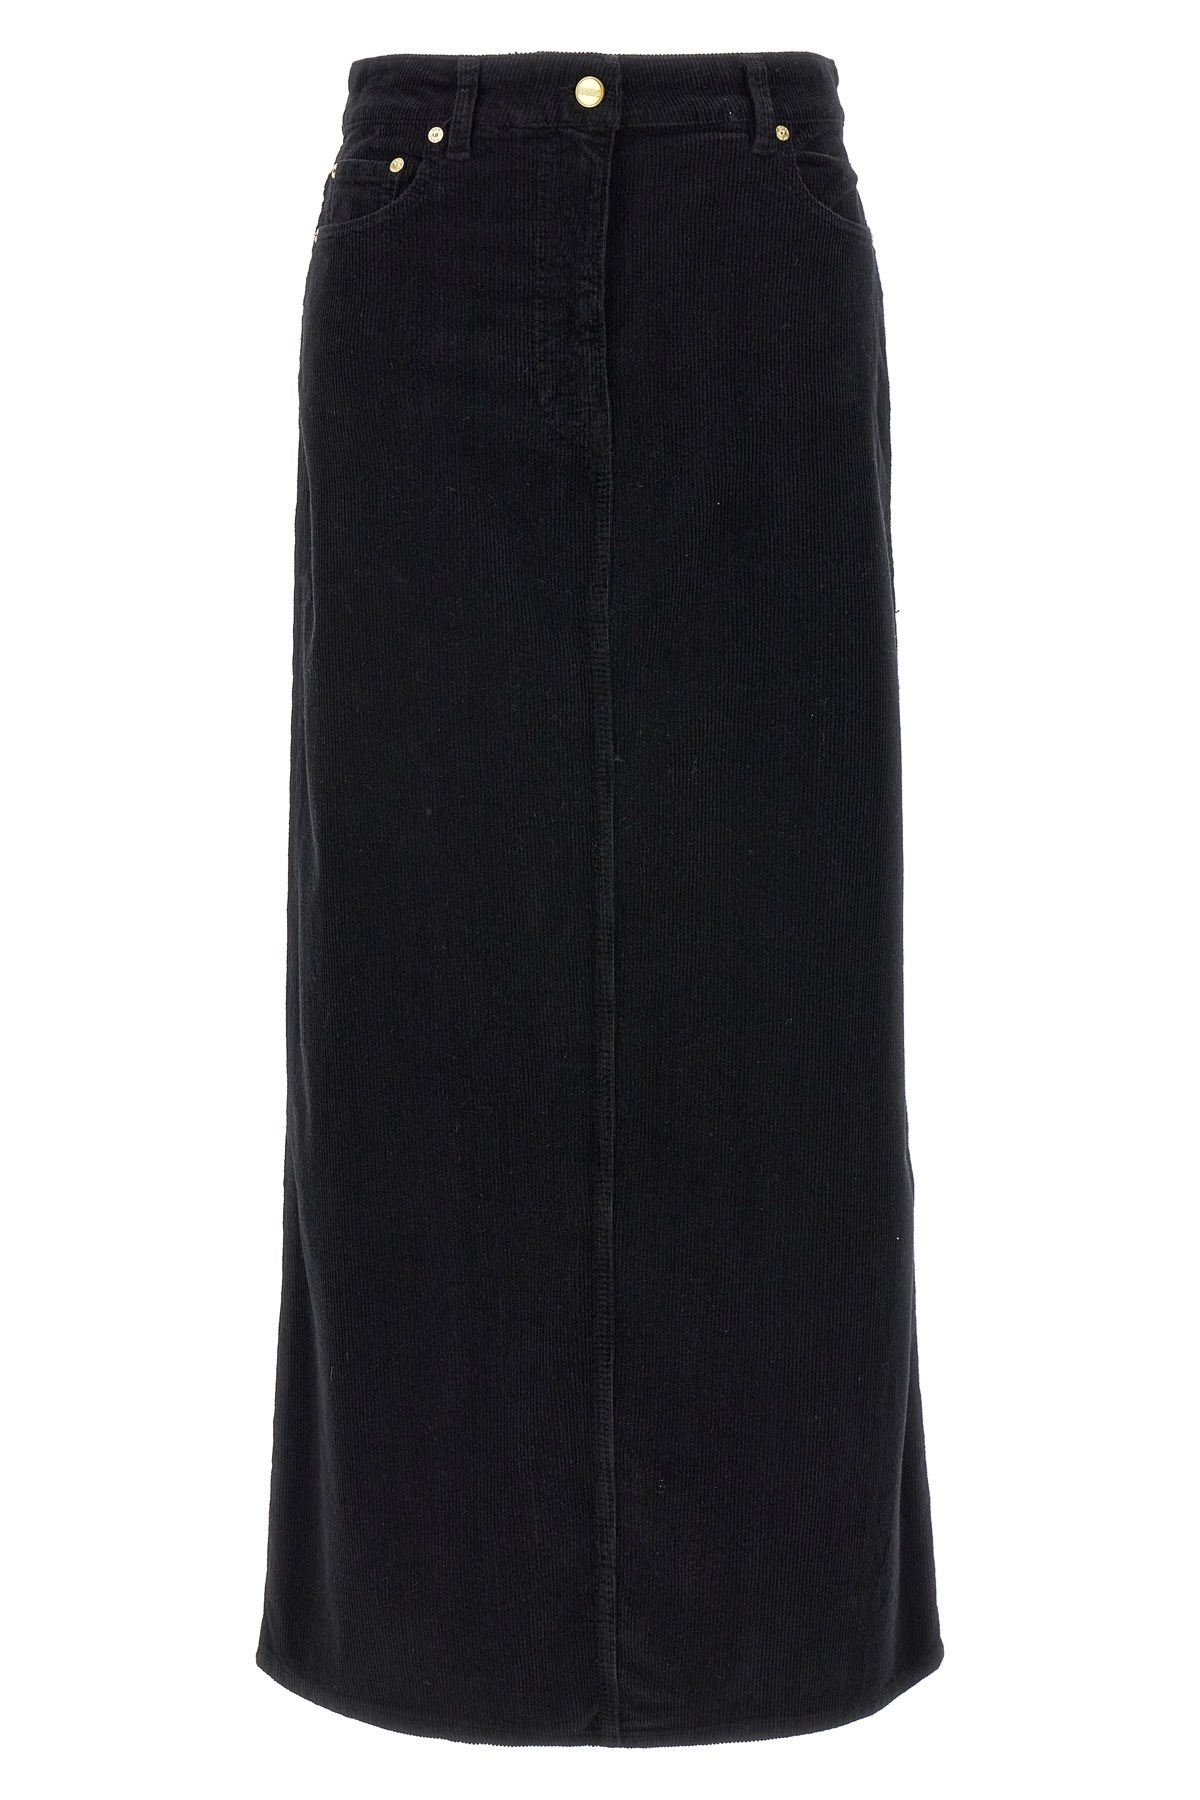 Long velvet ribbed skirt - 1